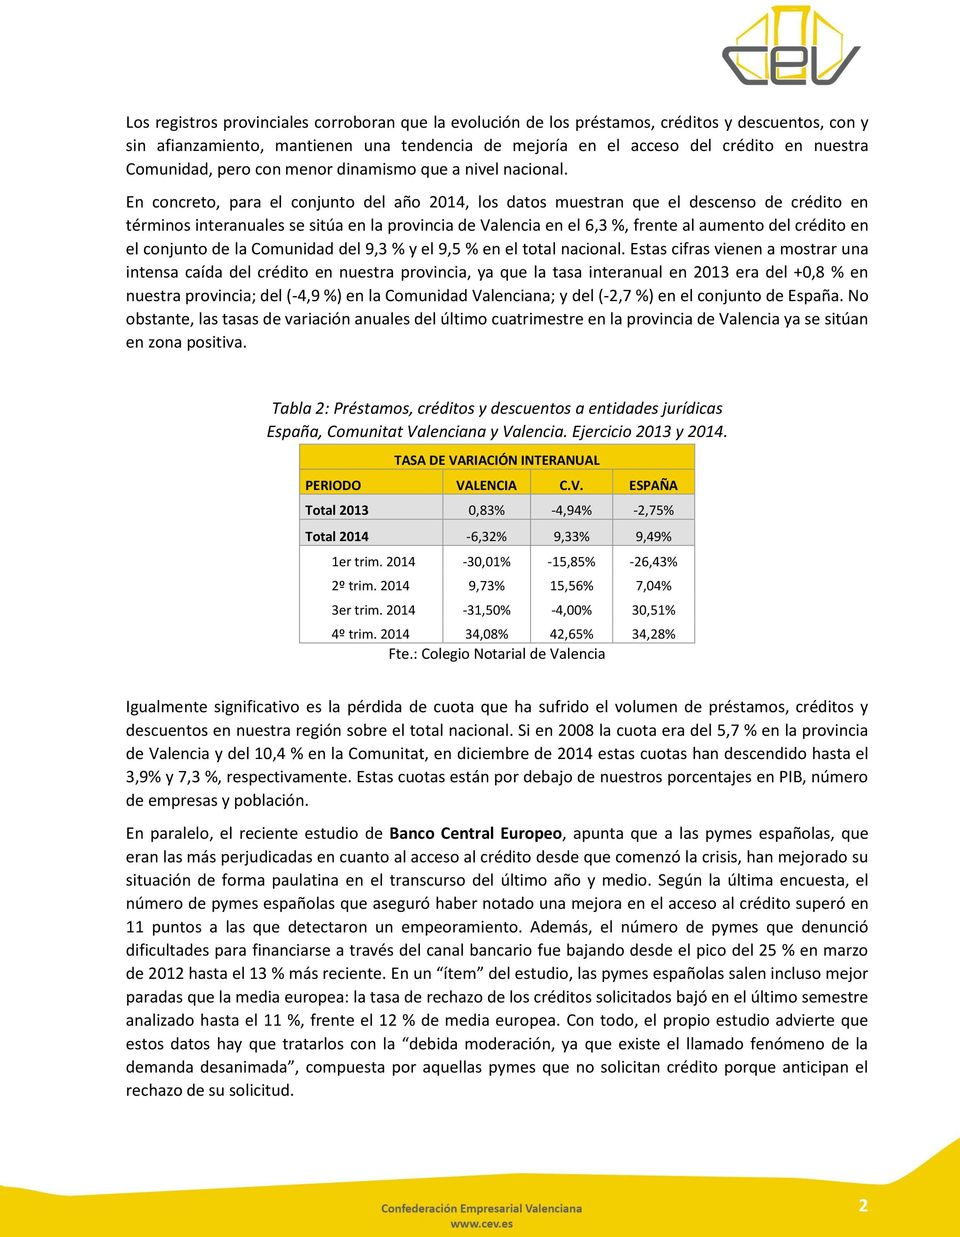 En concreto, para el conjunto del año 2014, los datos muestran que el descenso de crédito en términos interanuales se sitúa en la provincia de Valencia en el 6,3 %, frente al aumento del crédito en